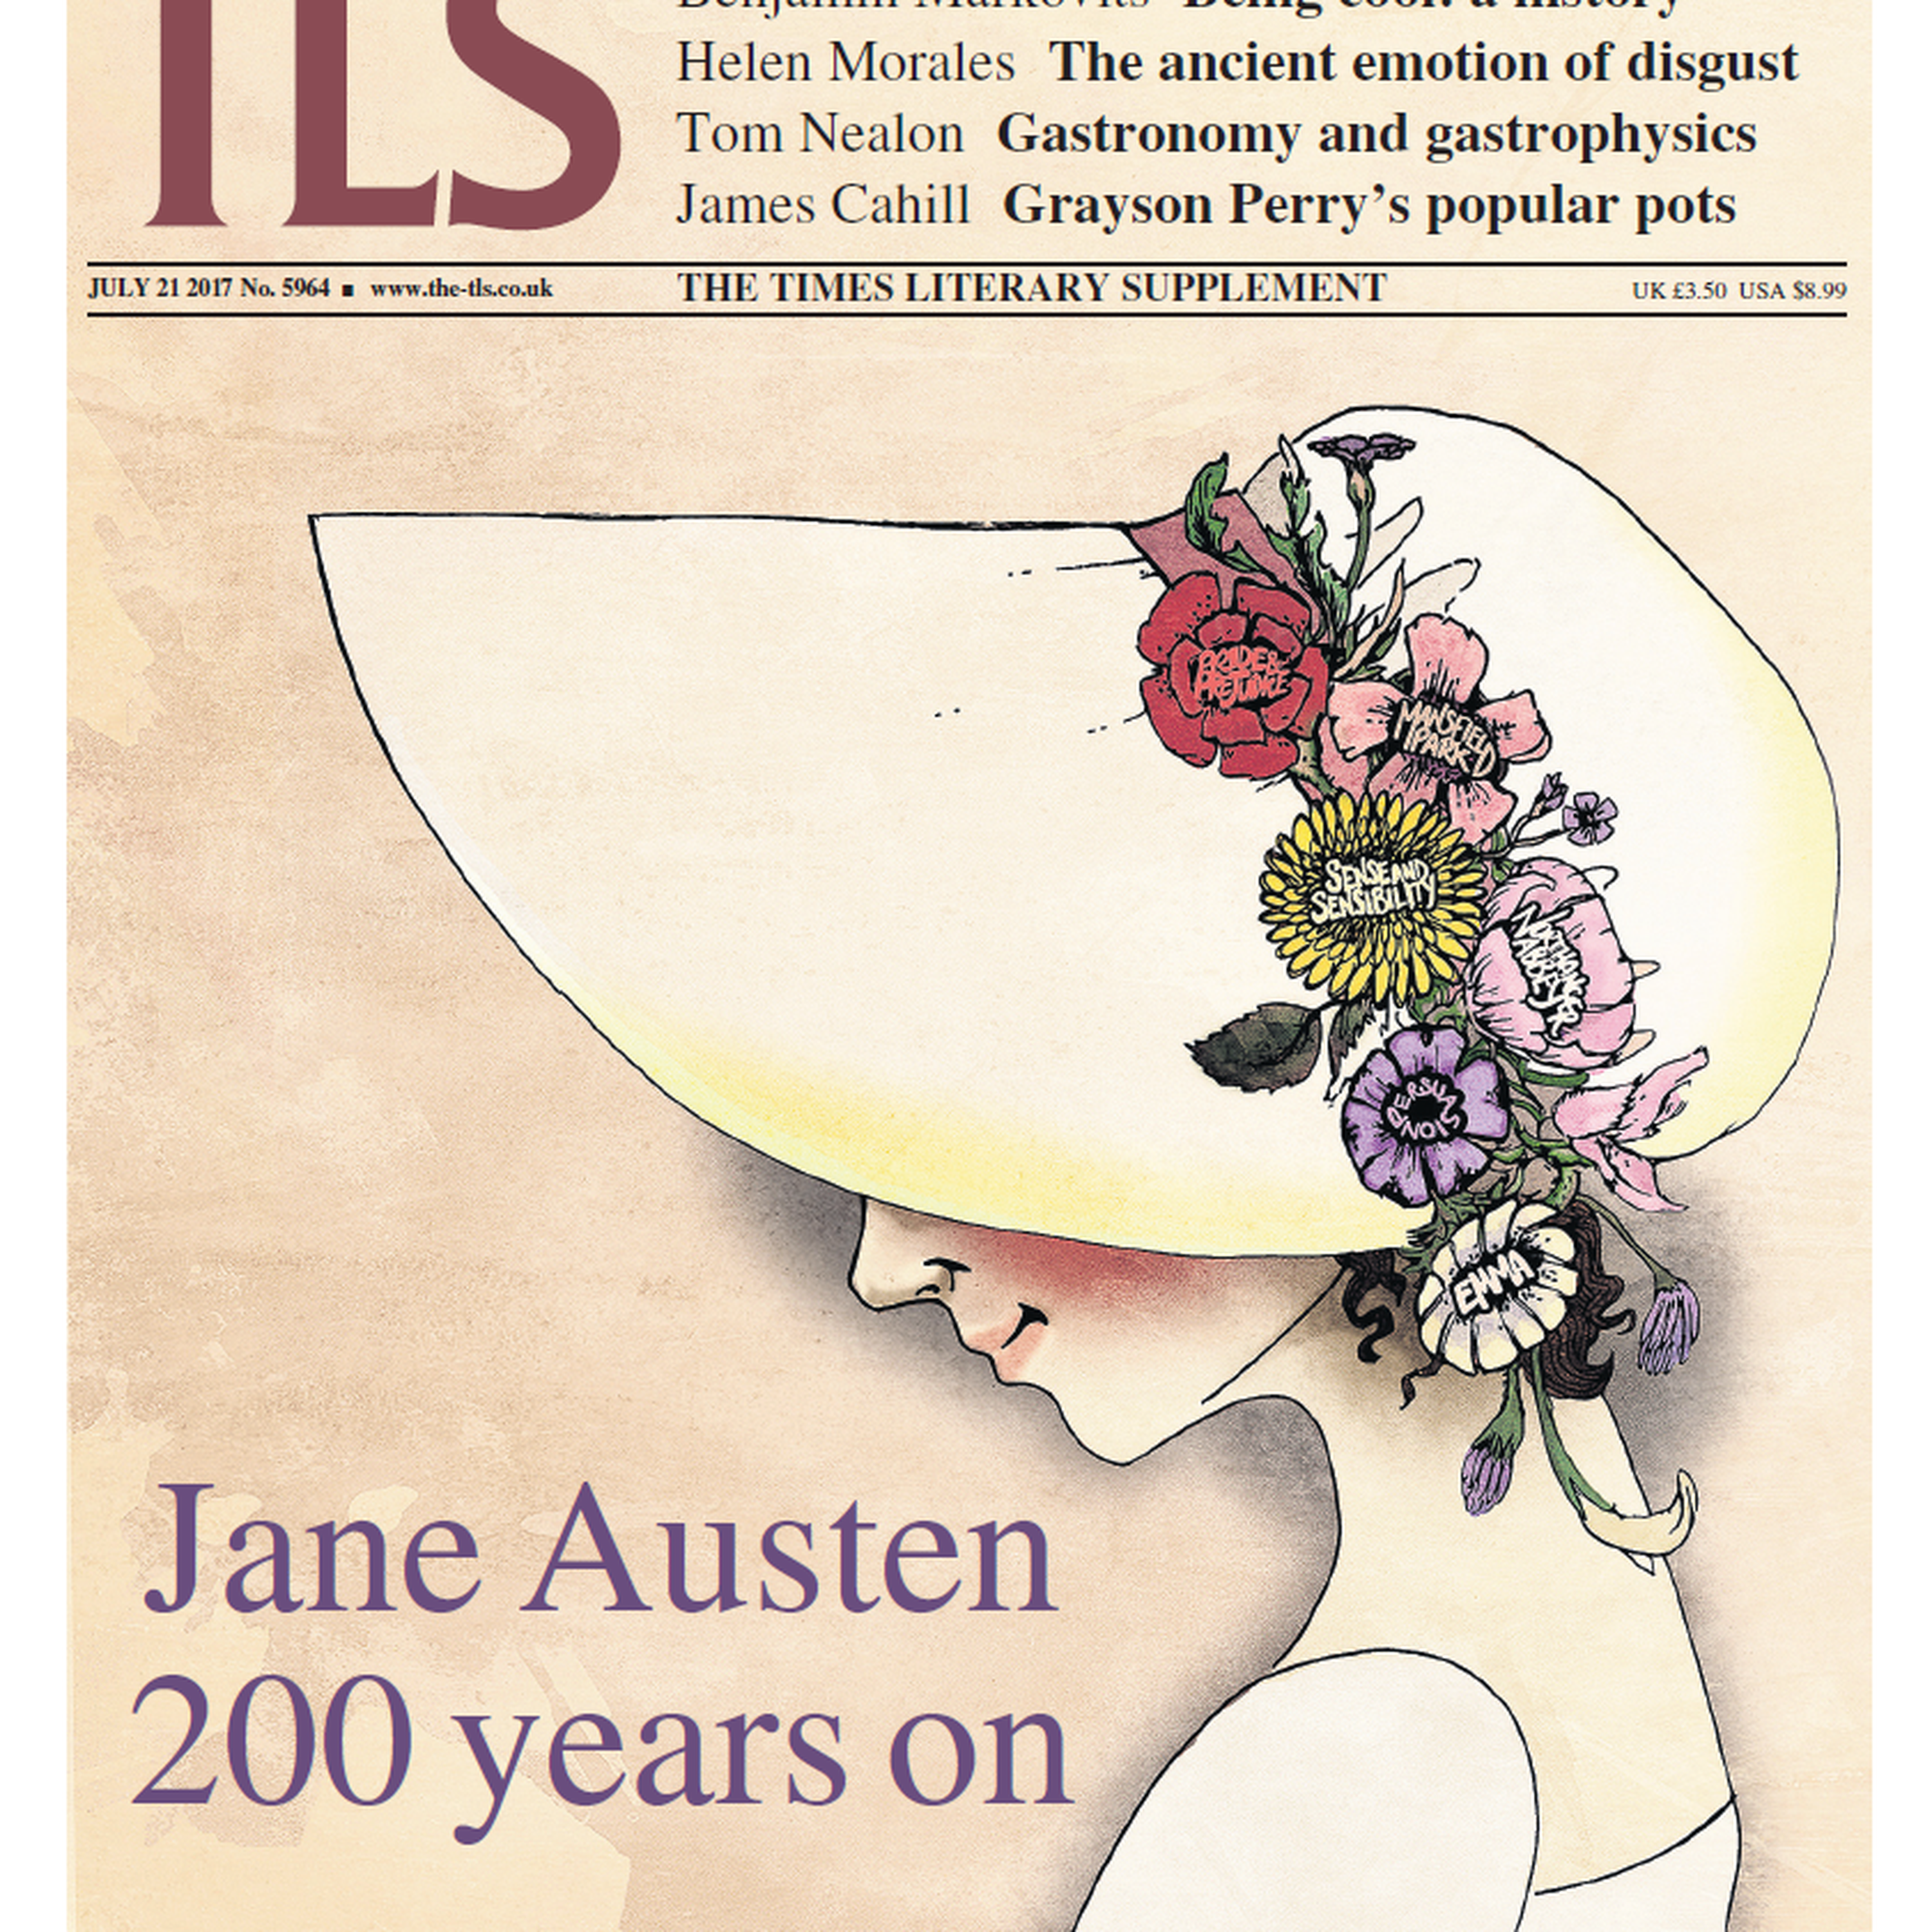 Jane Austen at 200